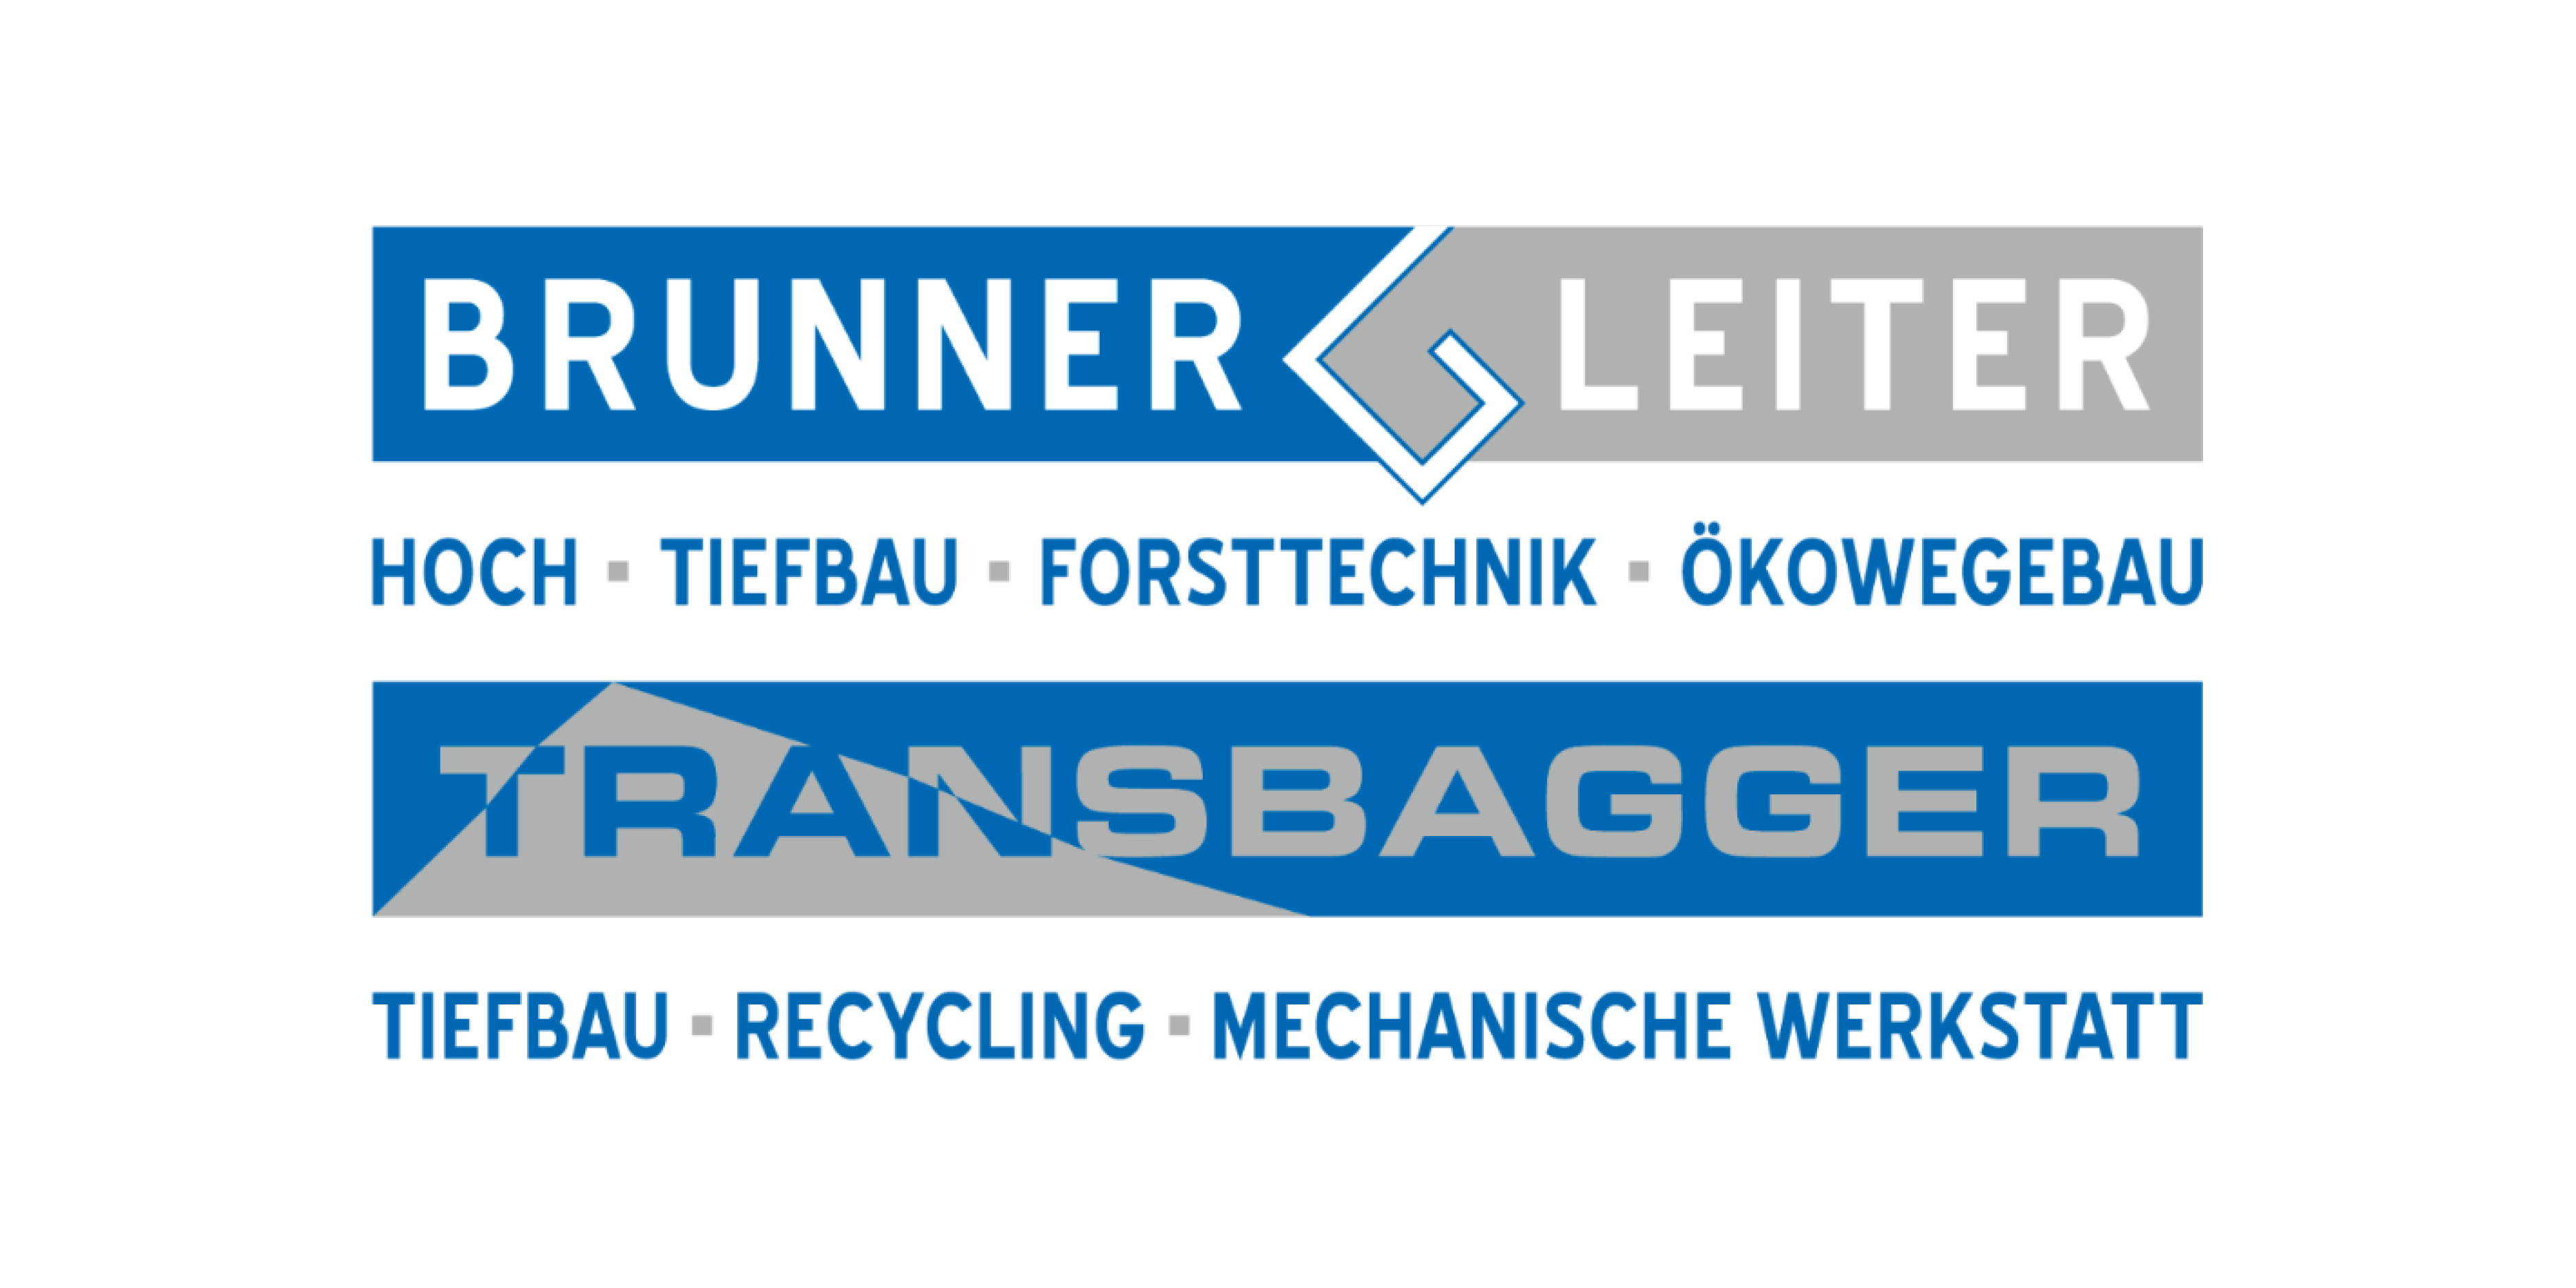 Brunner & Leiter GmbH | srl